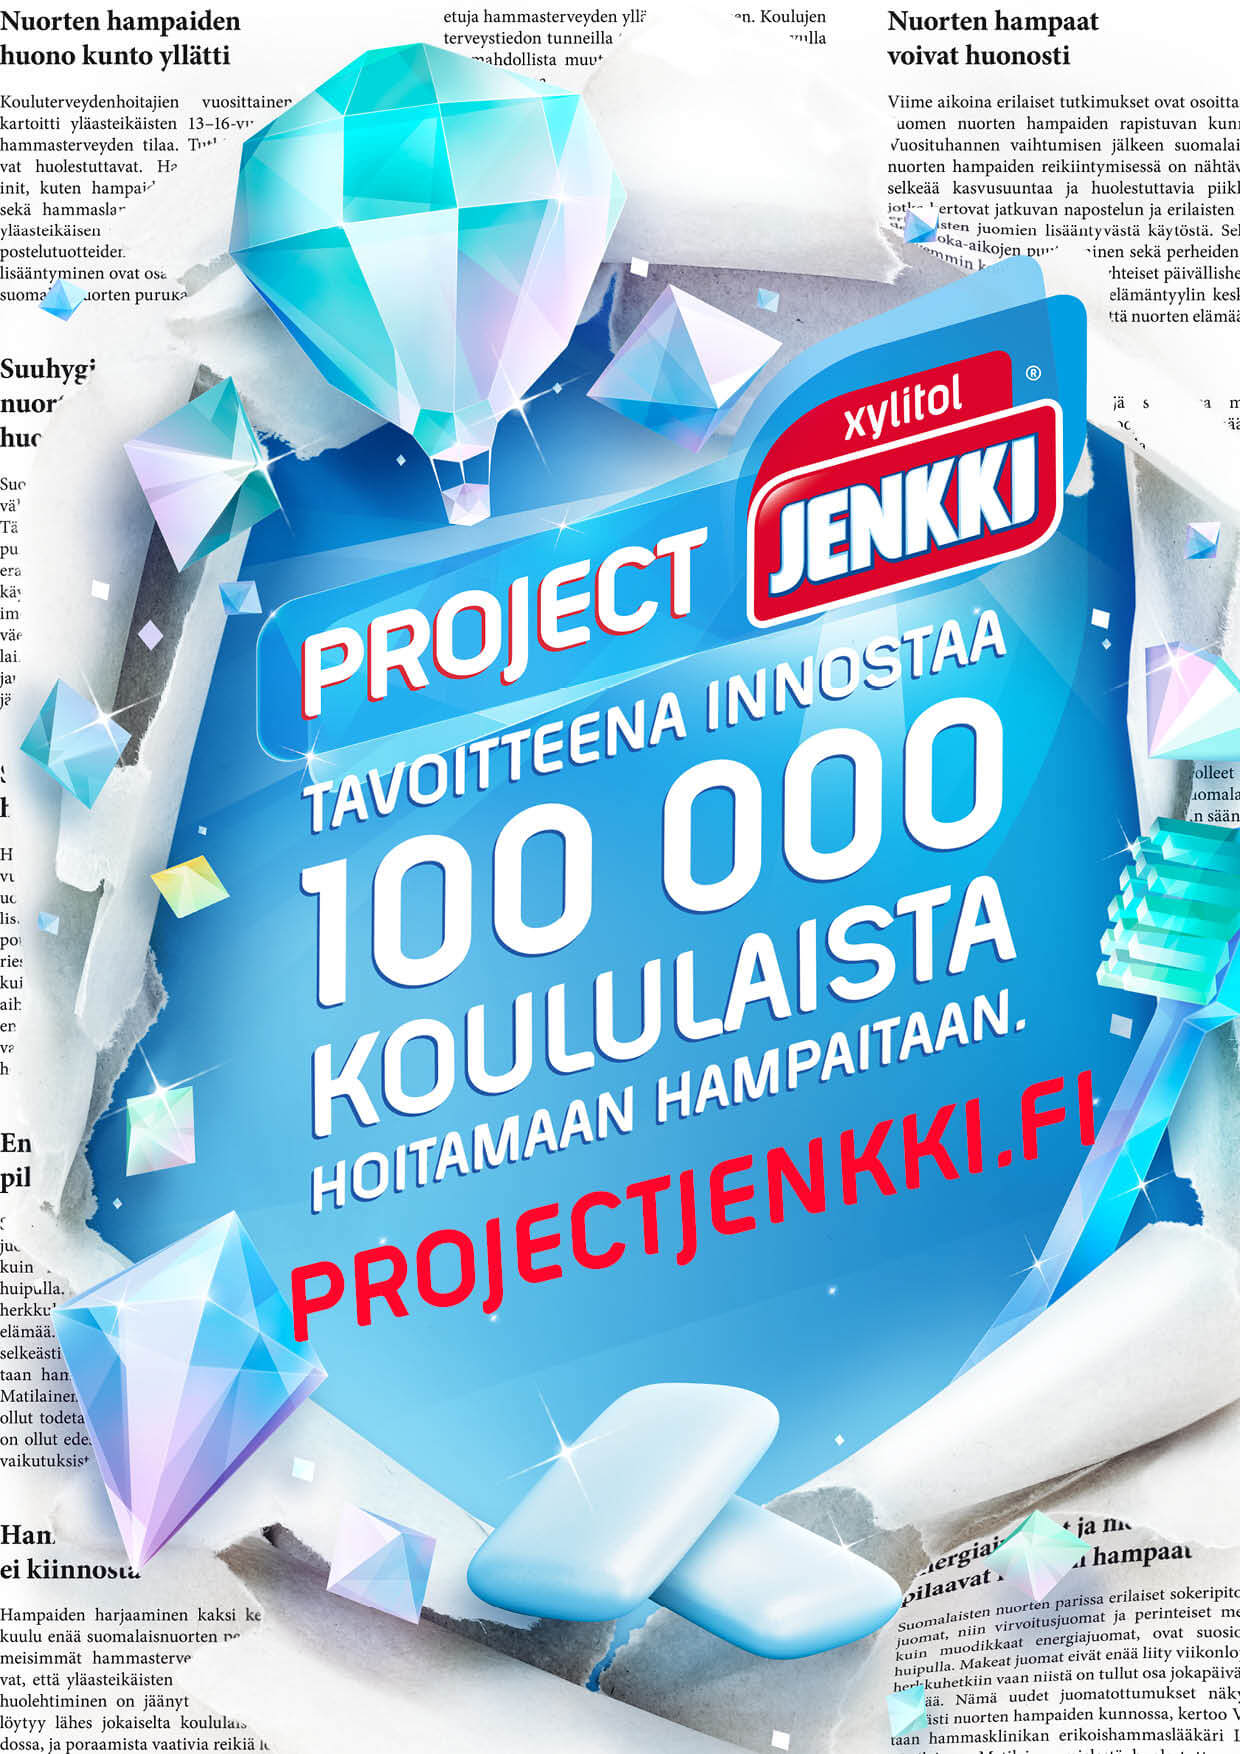 Project Jenkki